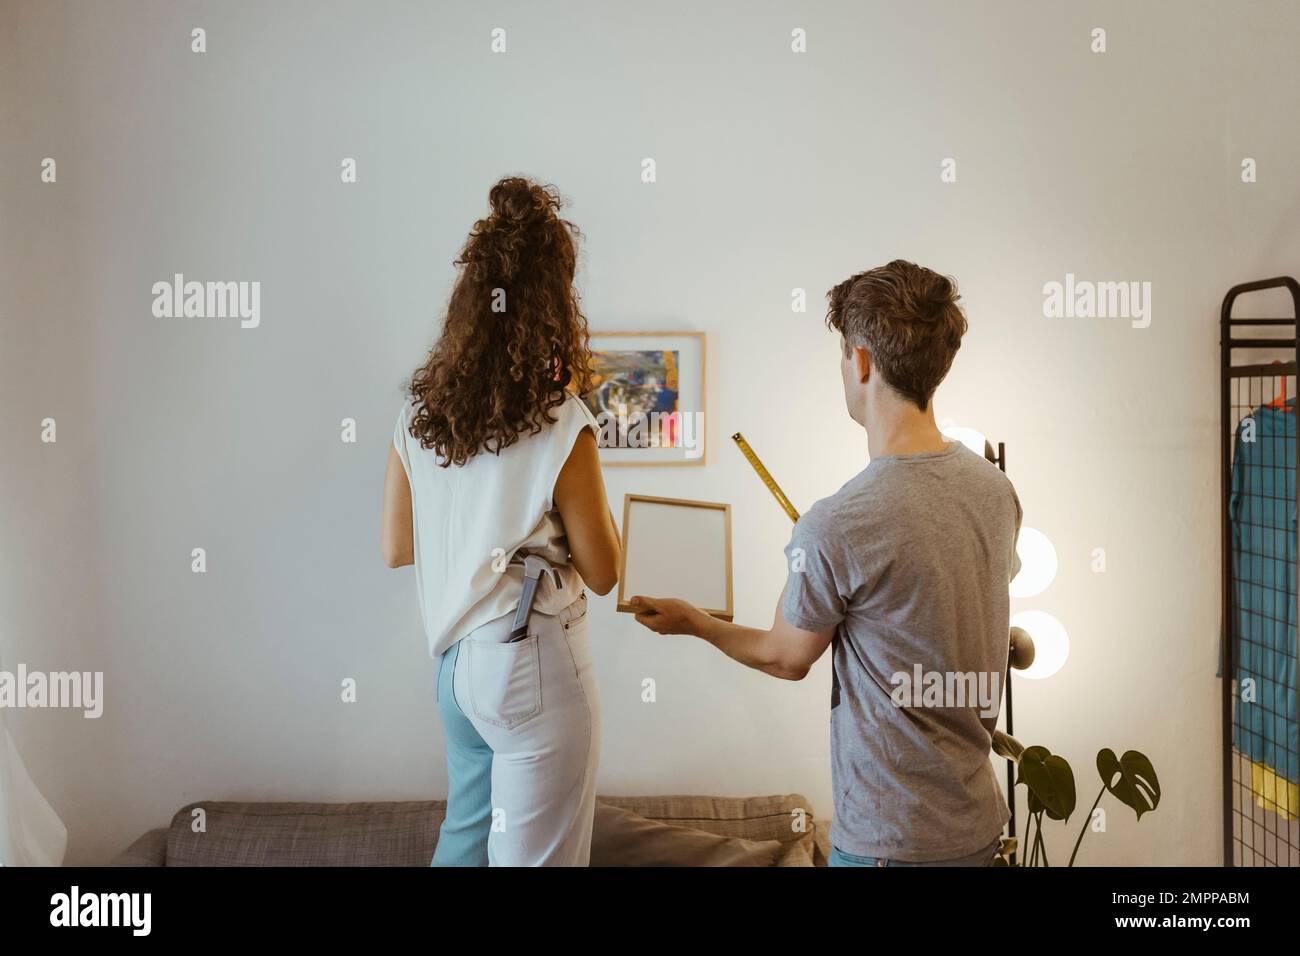 Rückansicht von Freund und Freundin, die sich gegenseitig helfen, während der Rahmen zu Hause an der Wand montiert wird Stockfoto